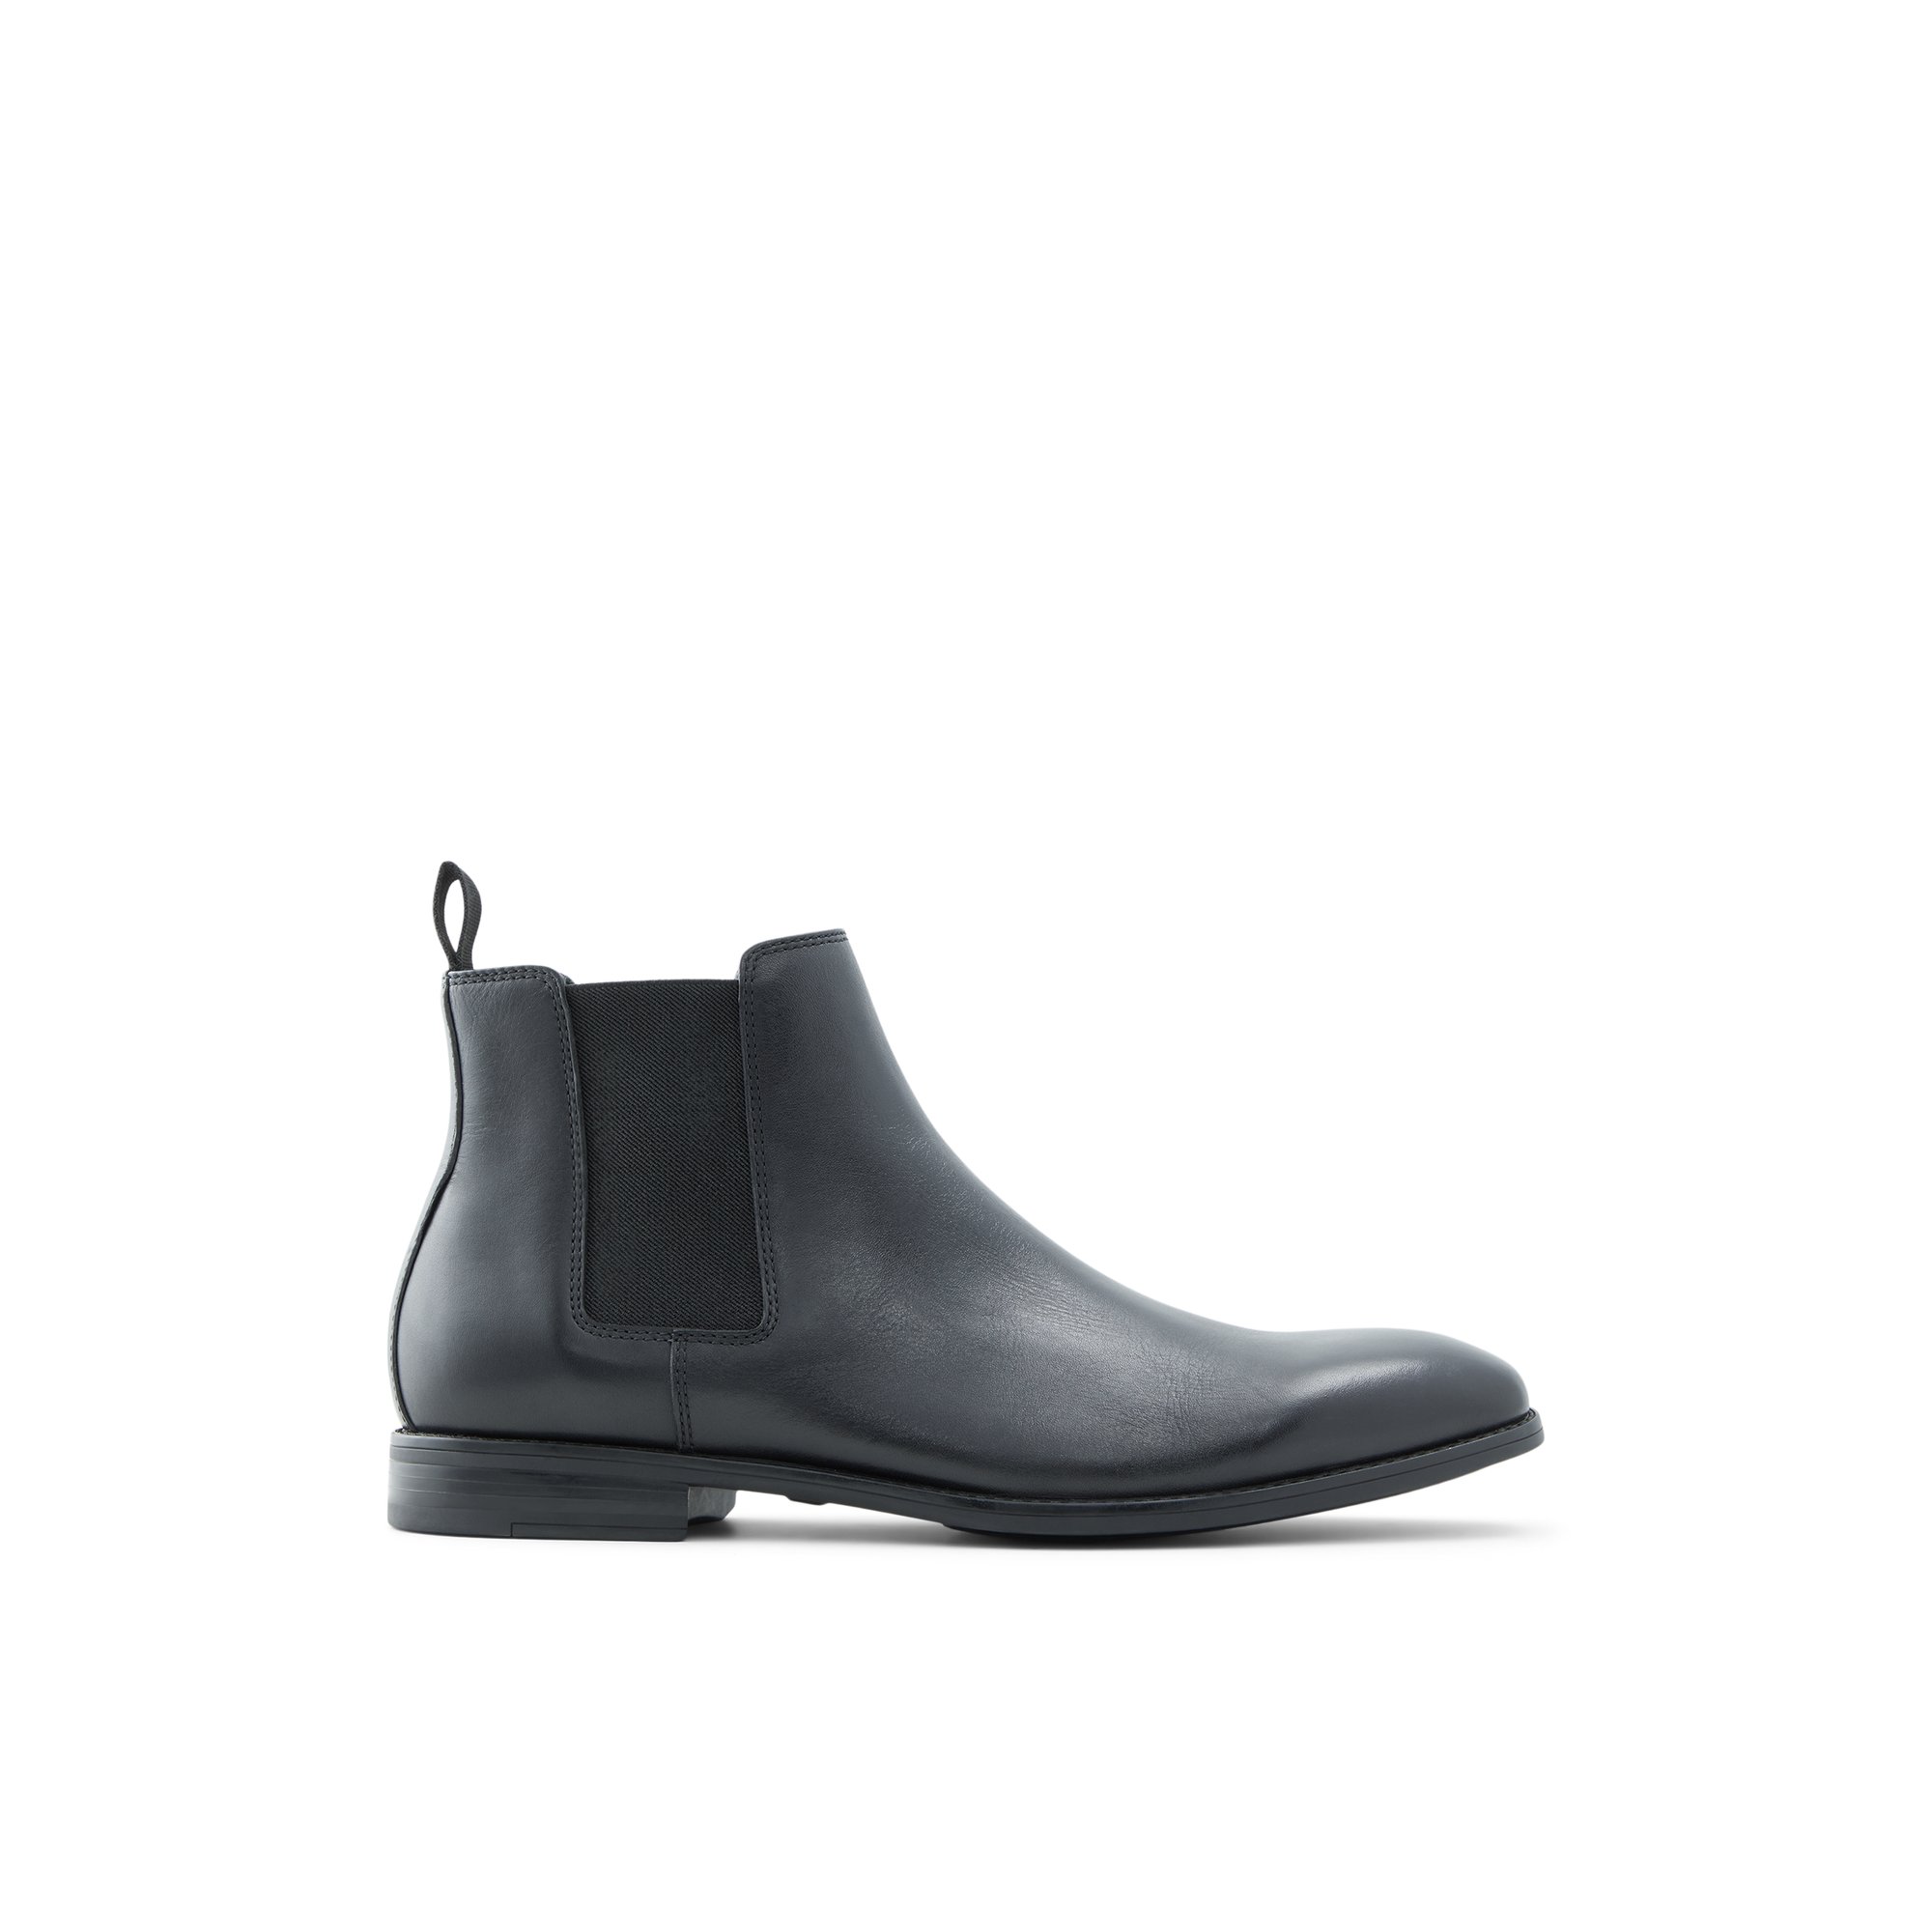 Image of ALDO Aboide - Men's Chelsea Boot - Black, Size 11